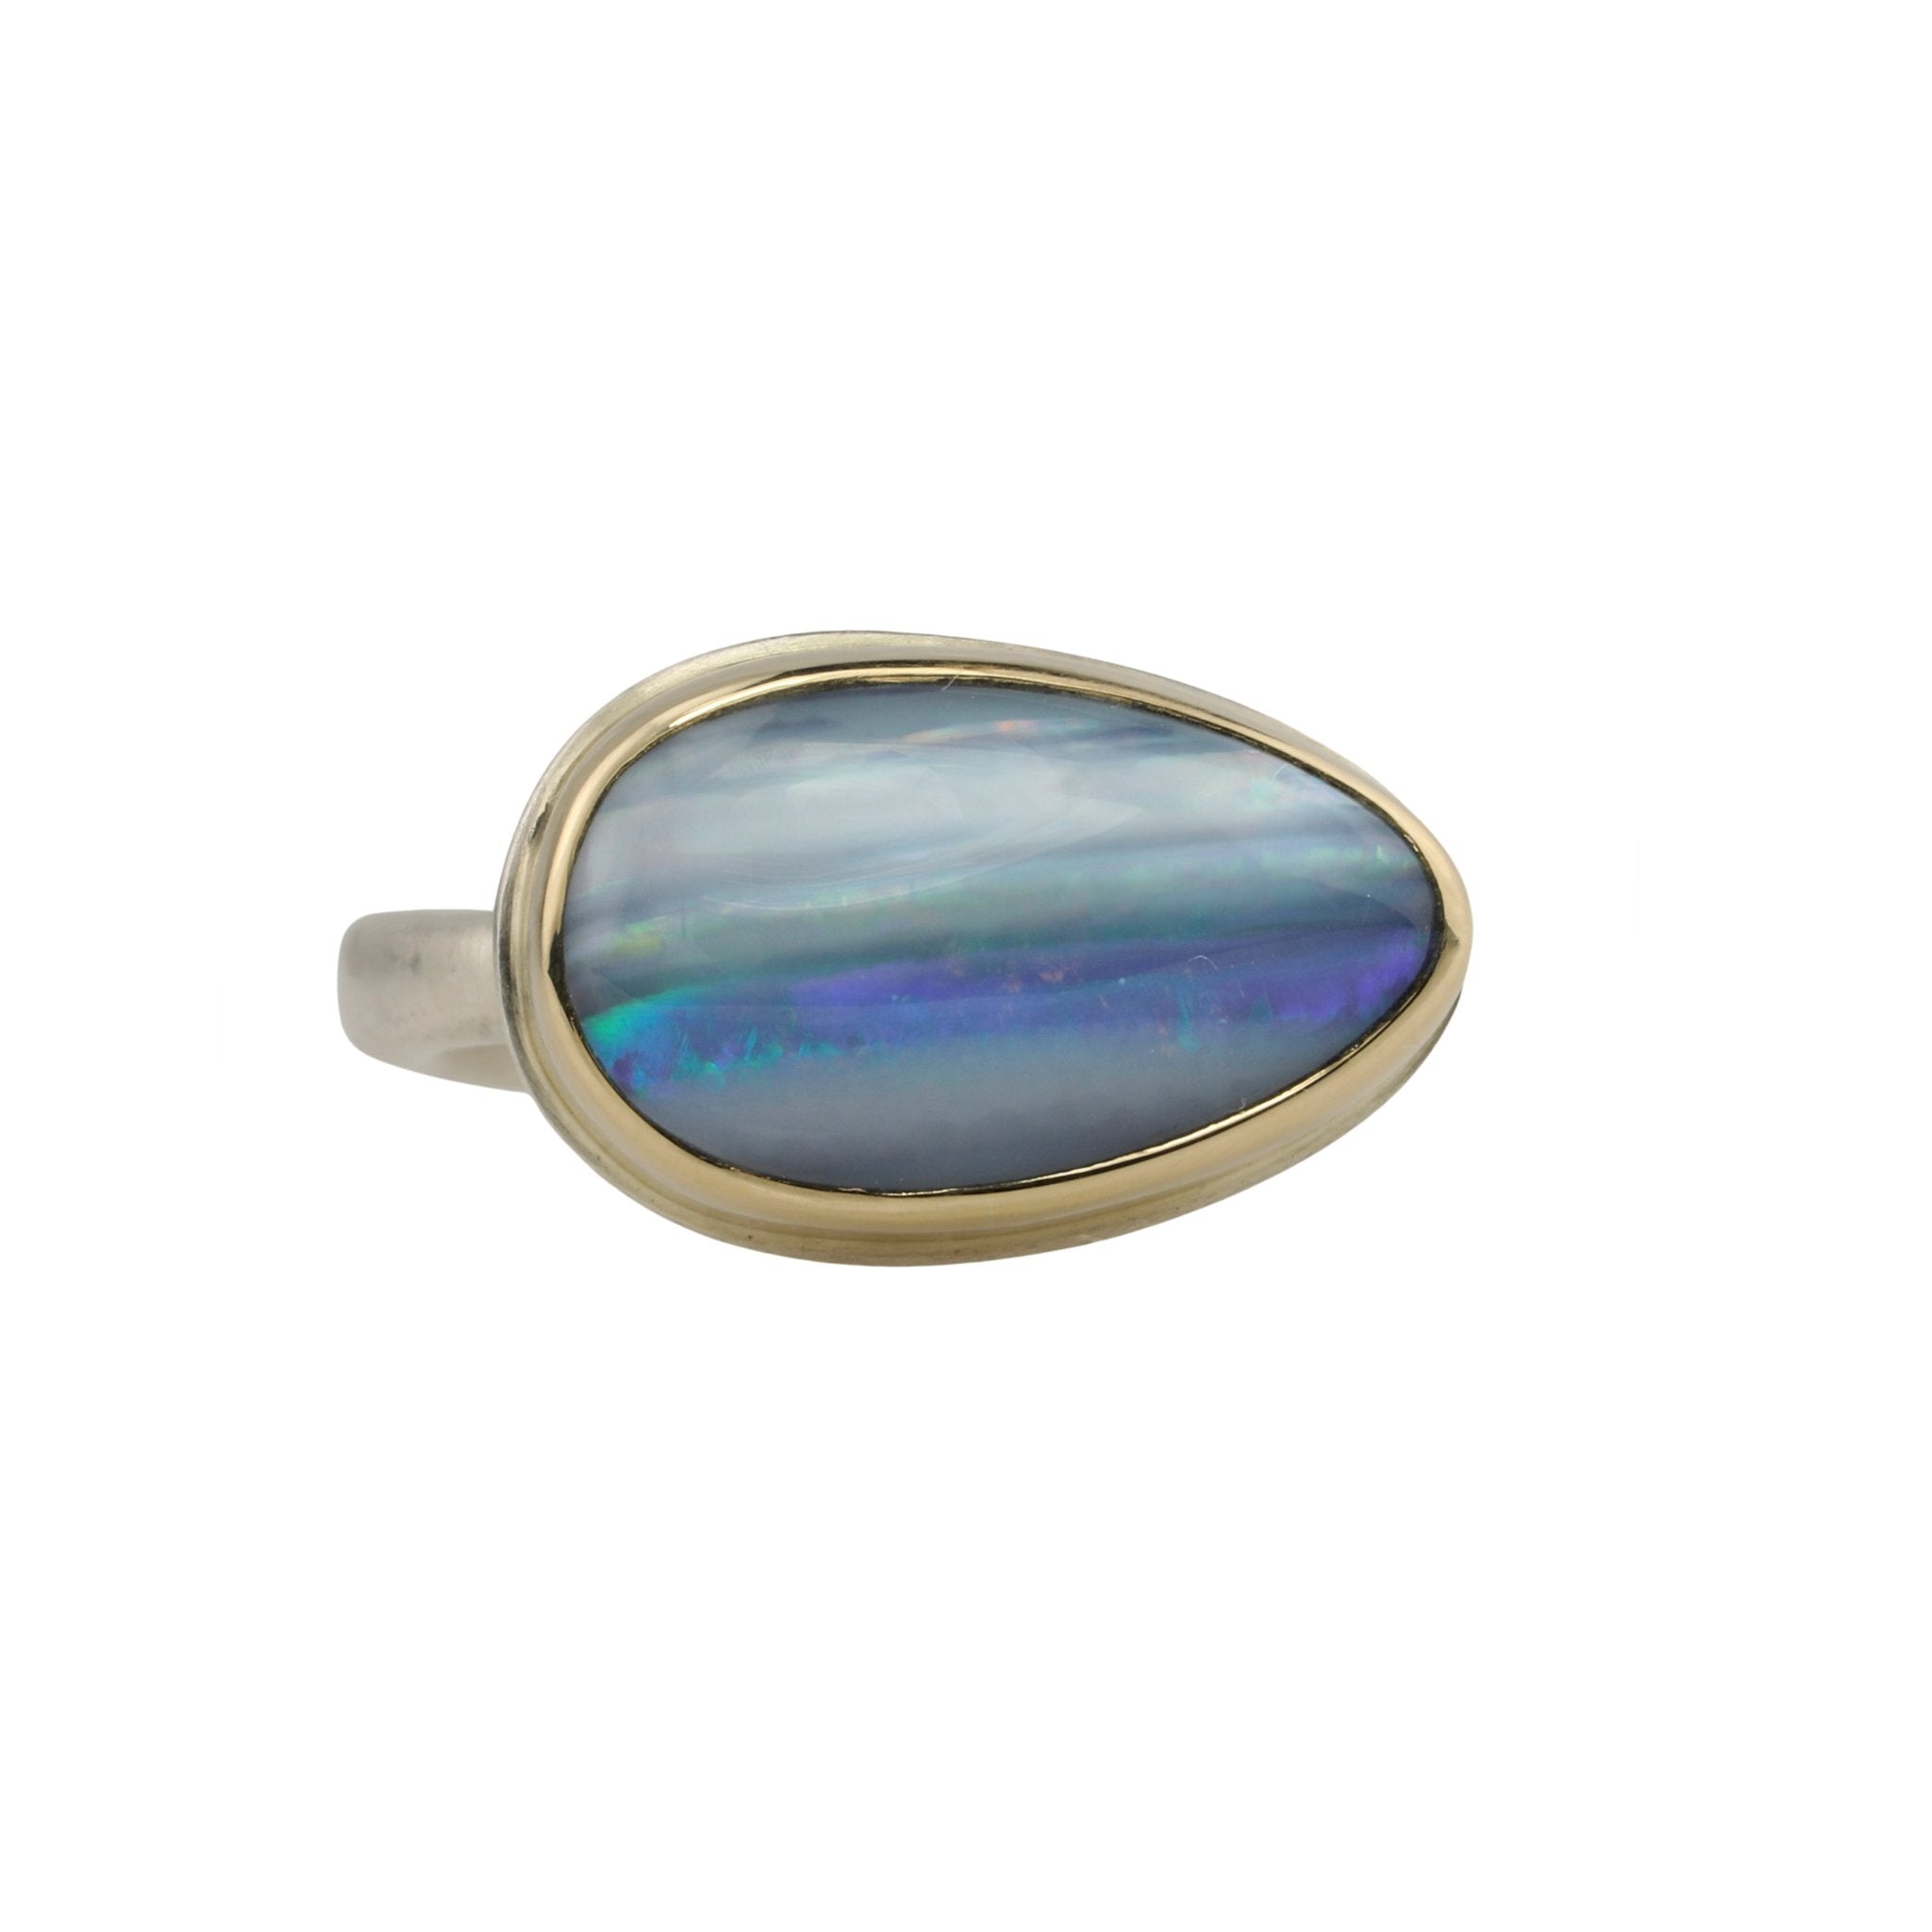 Small Teardrop Australian Opal Doublet Ring